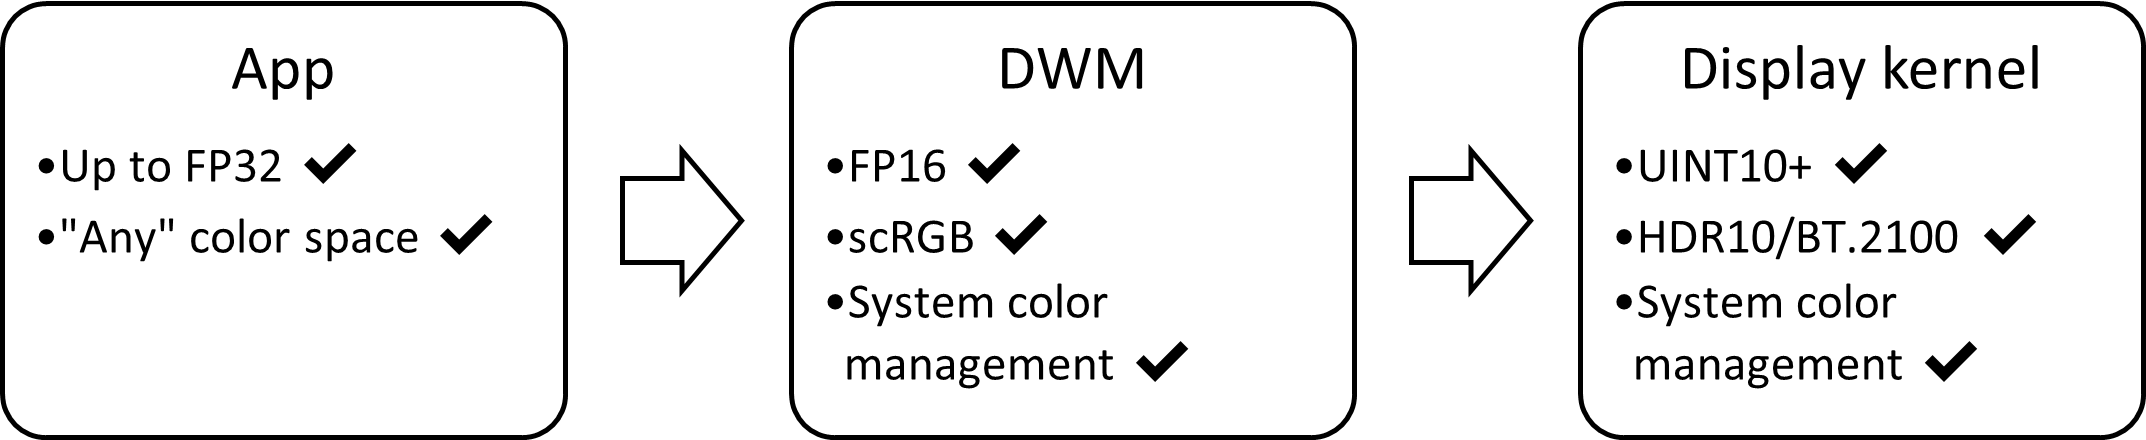 HDR ディスプレイ スタックのブロック図: FP16、scRGB、自動色管理